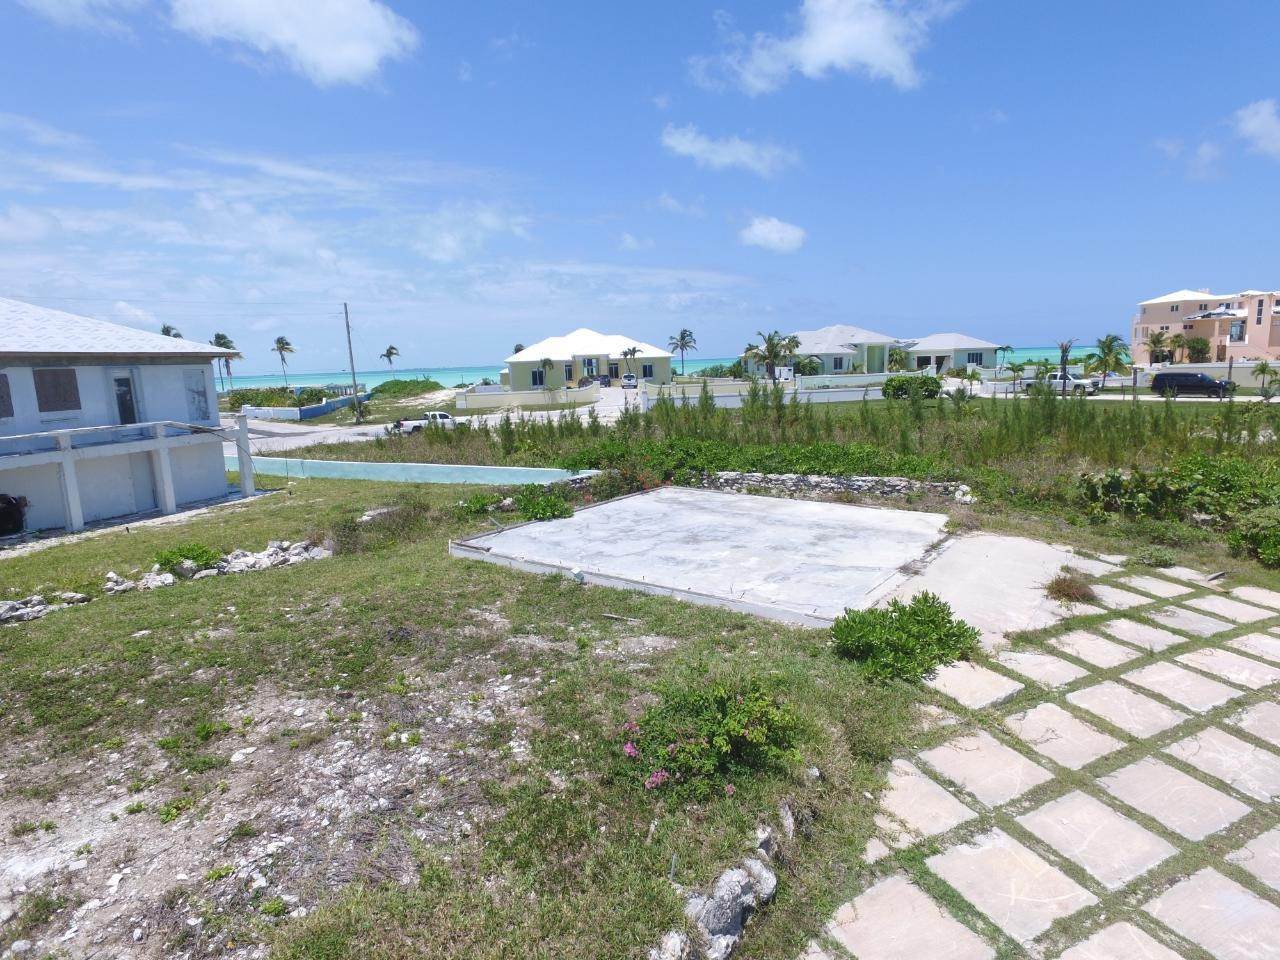 17. Lots / Acreage for Sale at Windward Beach, Treasure Cay, Abaco, Bahamas